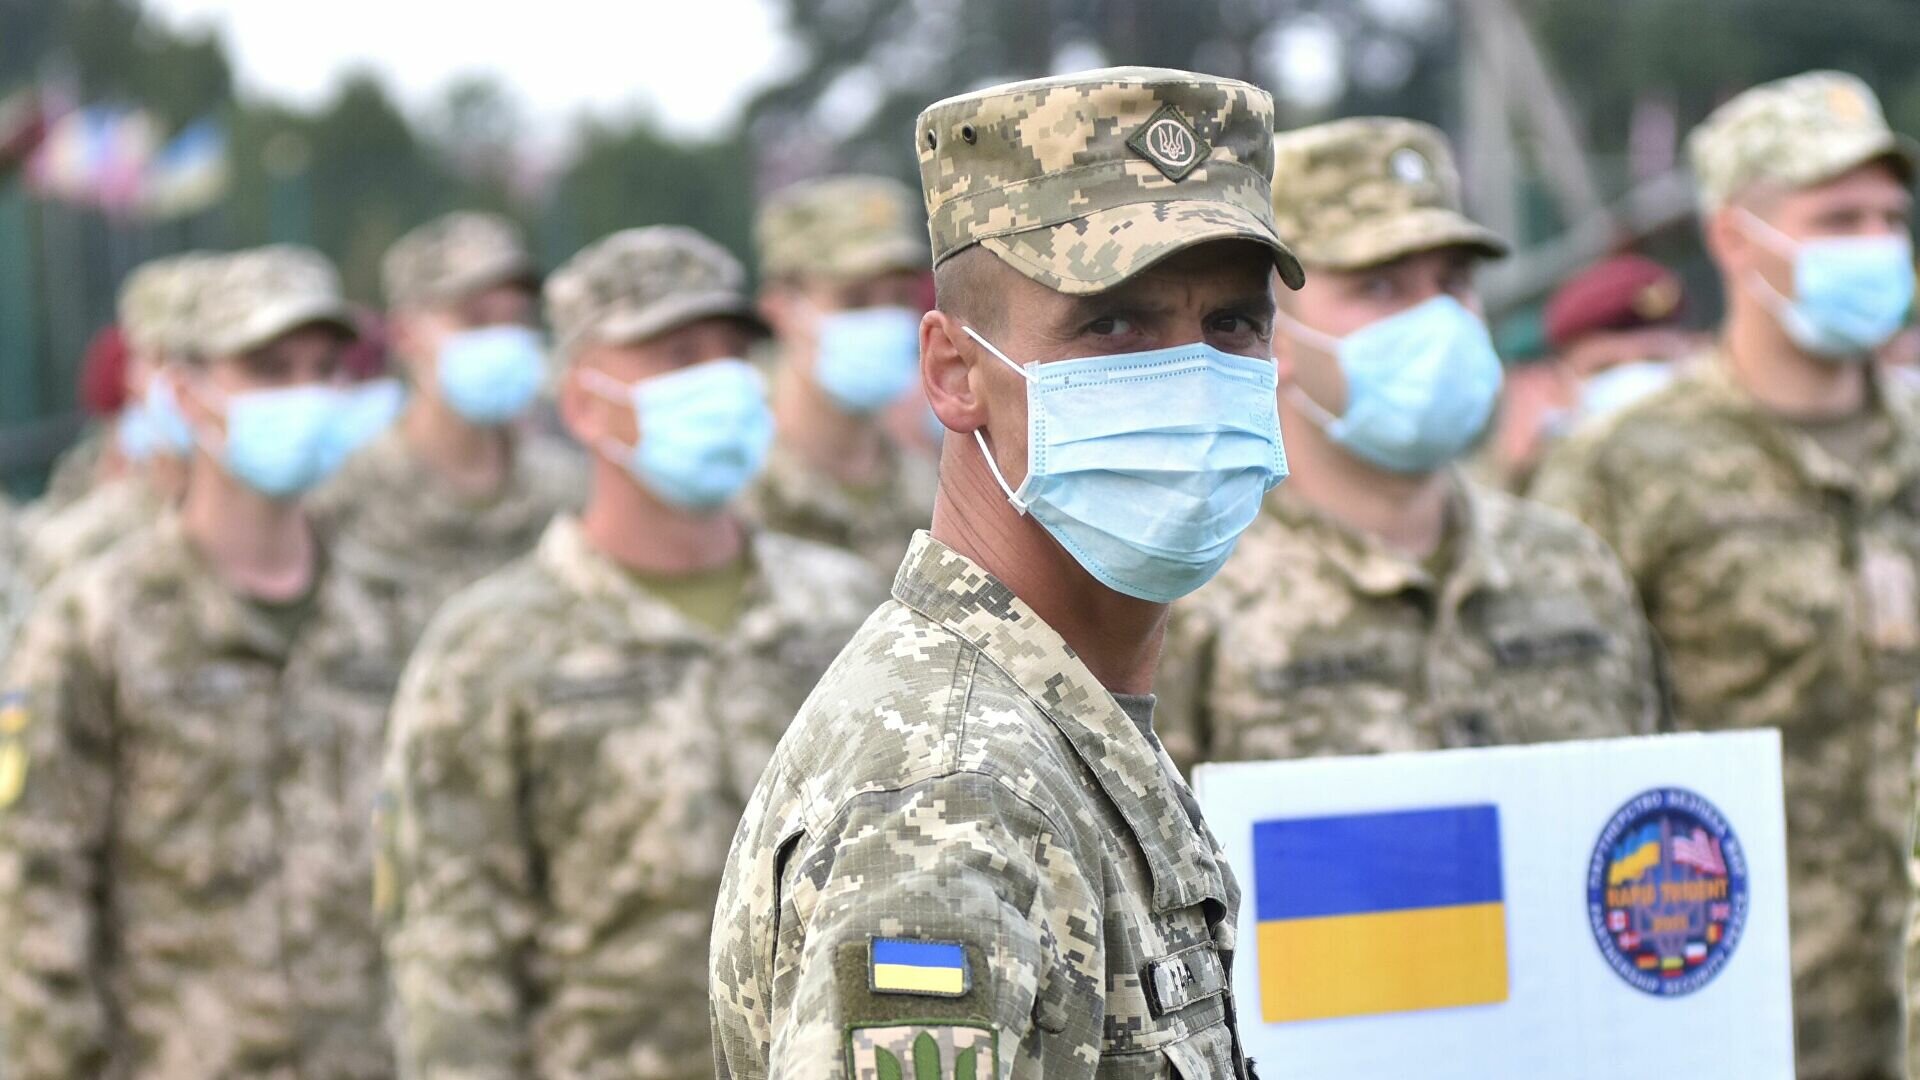 Украина захотела командовать НАТОвскими войсками из штаба Альянса